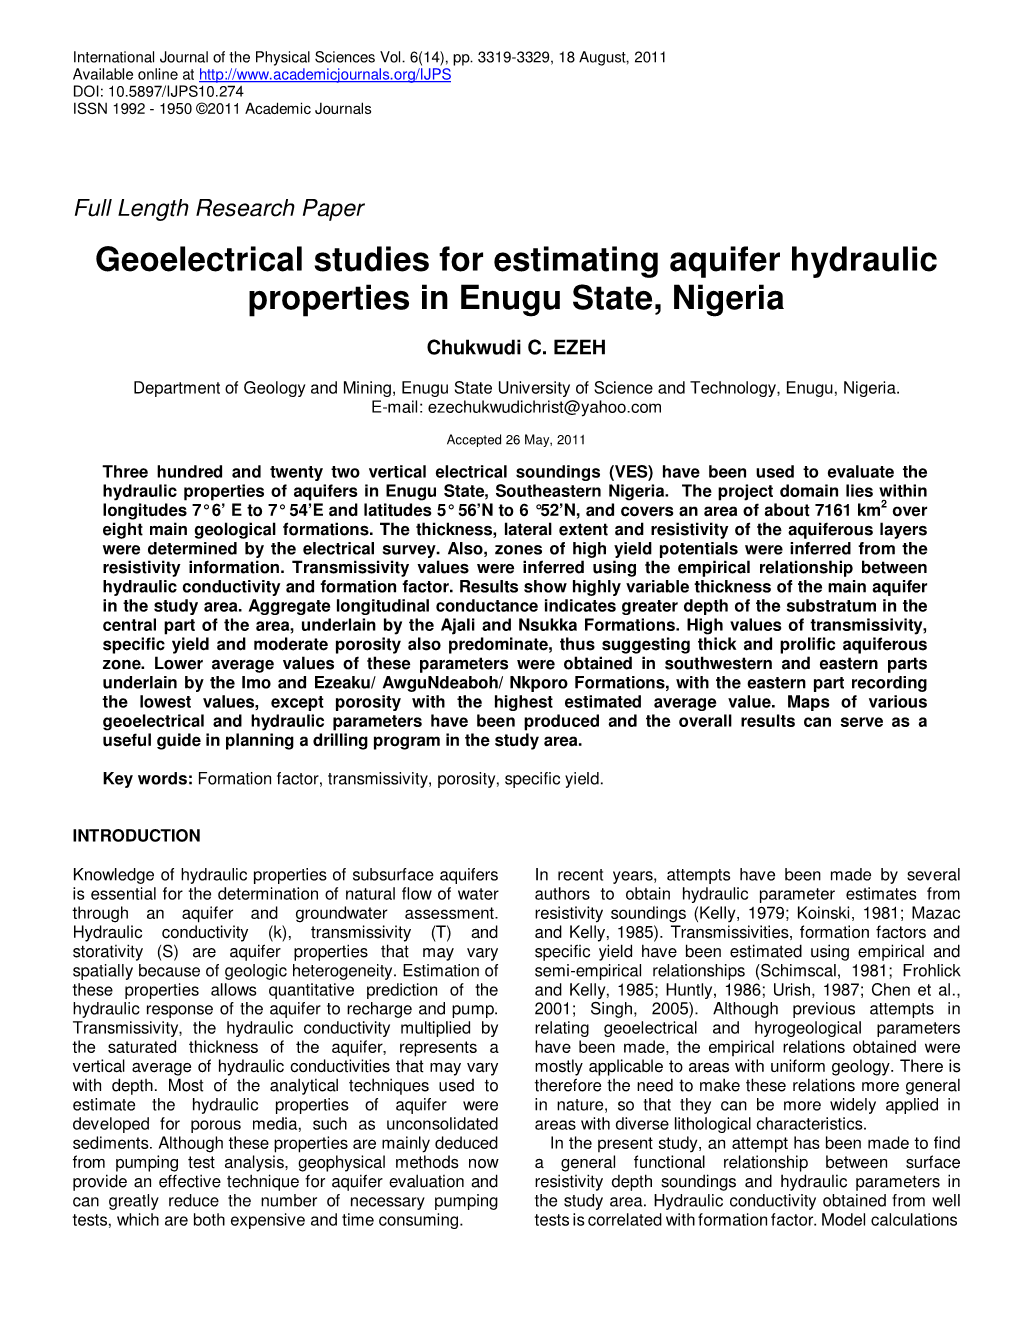 Geoelectrical Studies for Estimating Aquifer Hydraulic Properties in Enugu State, Nigeria